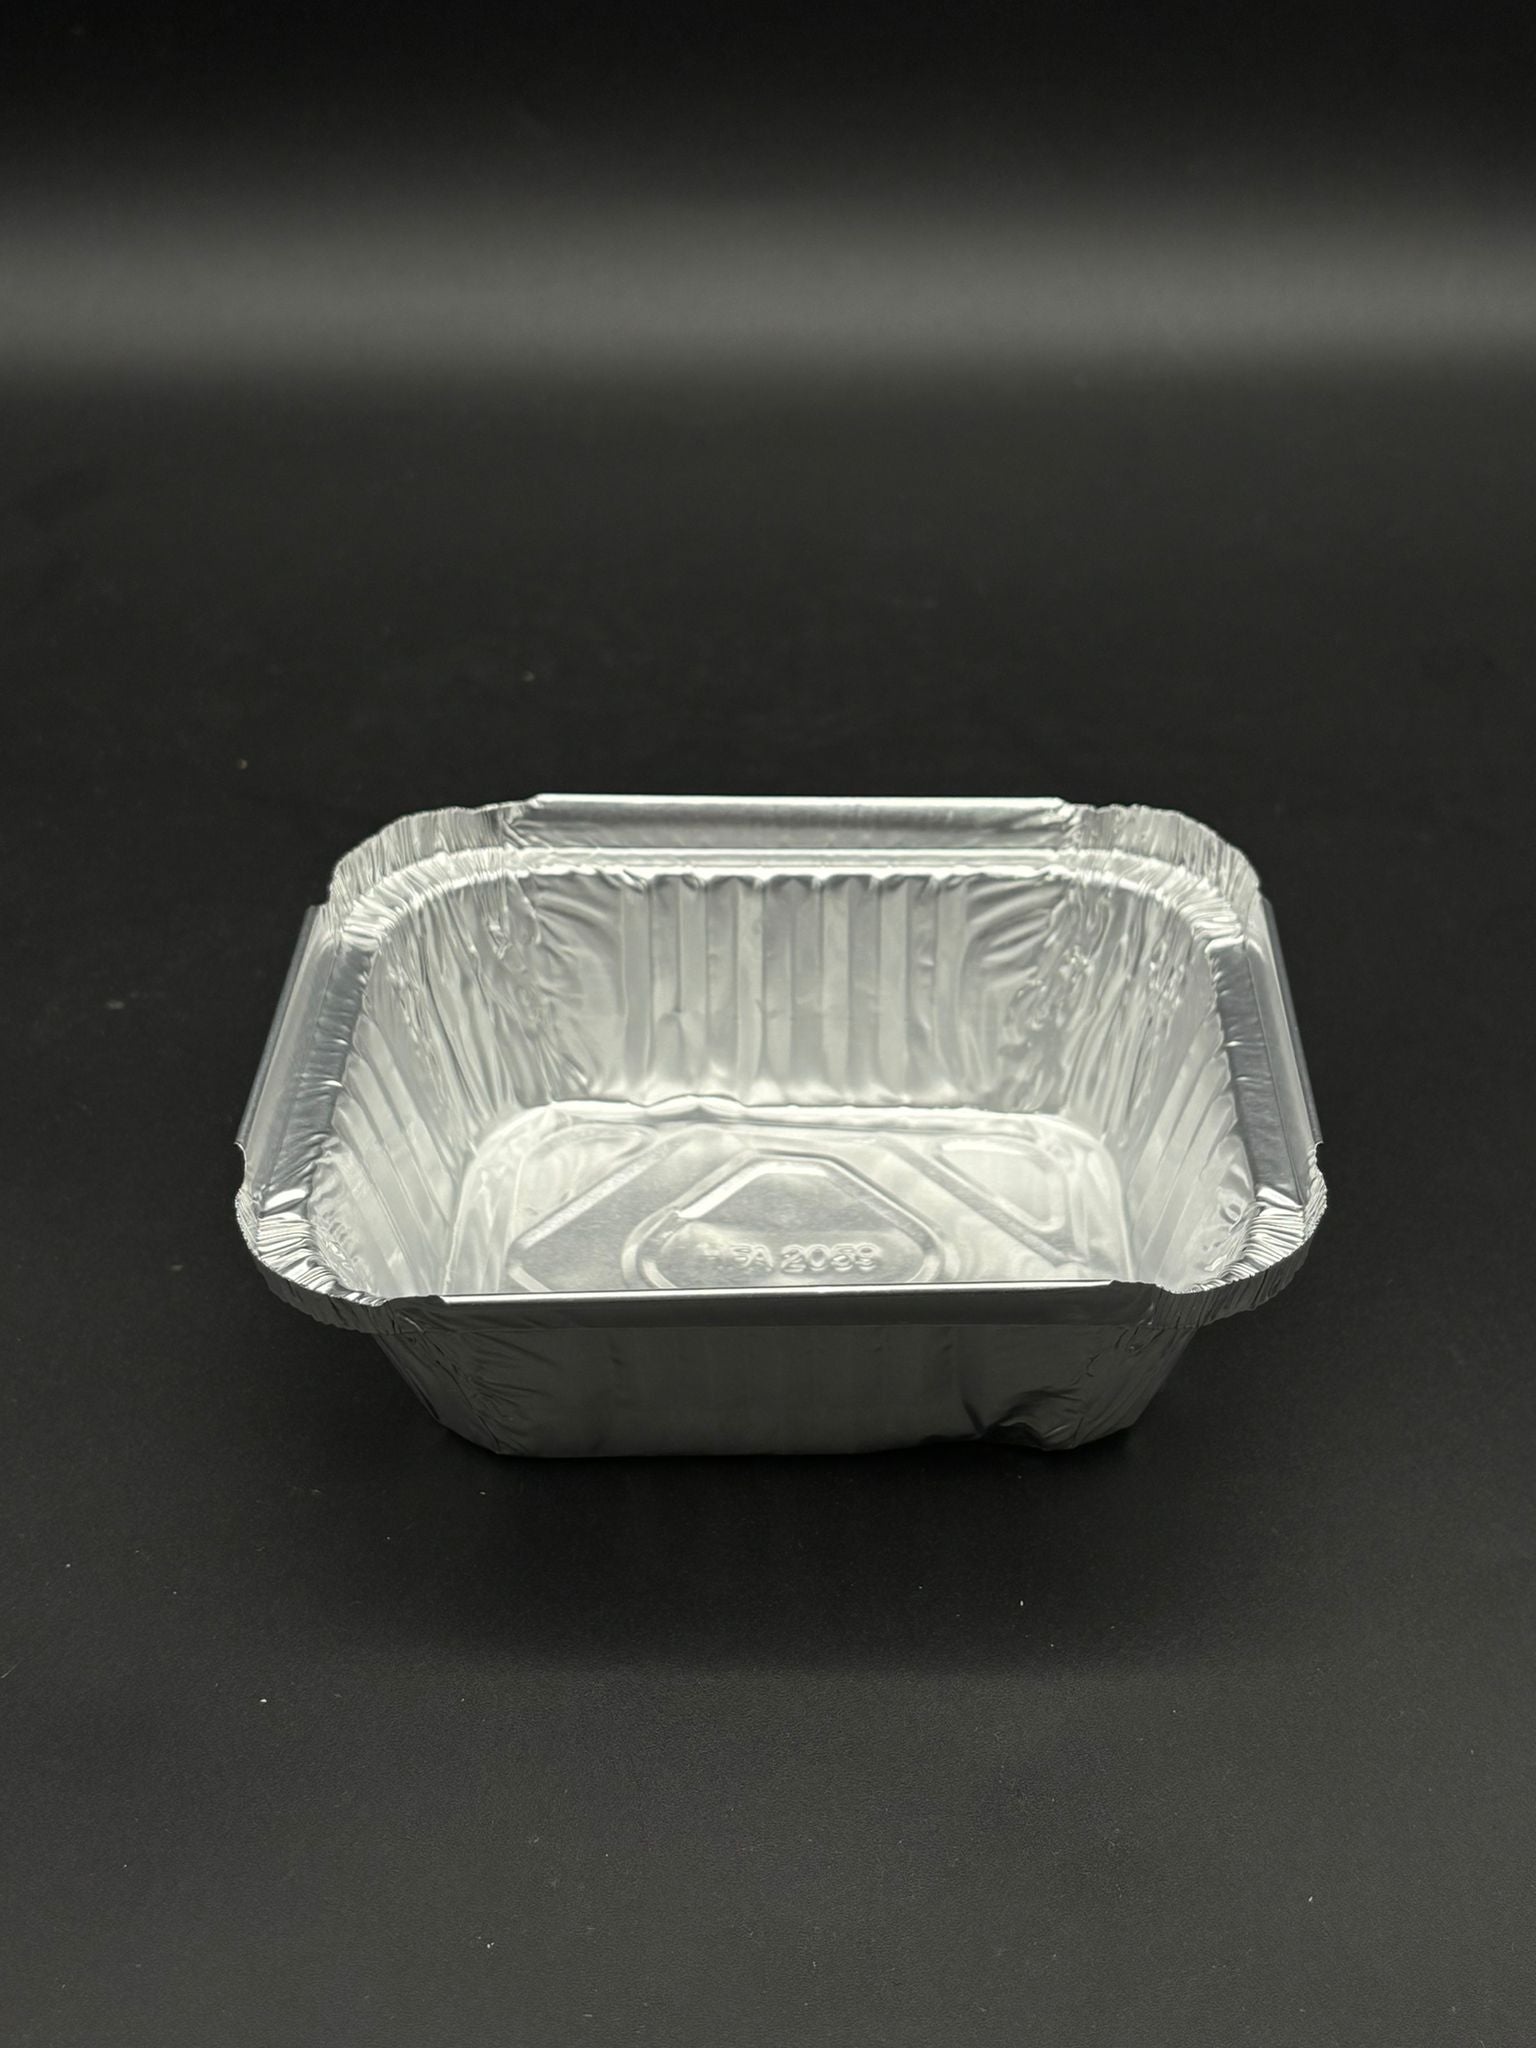 HFA Foil Pan 1 lb. Oblong 2059-30 - 1000/Case